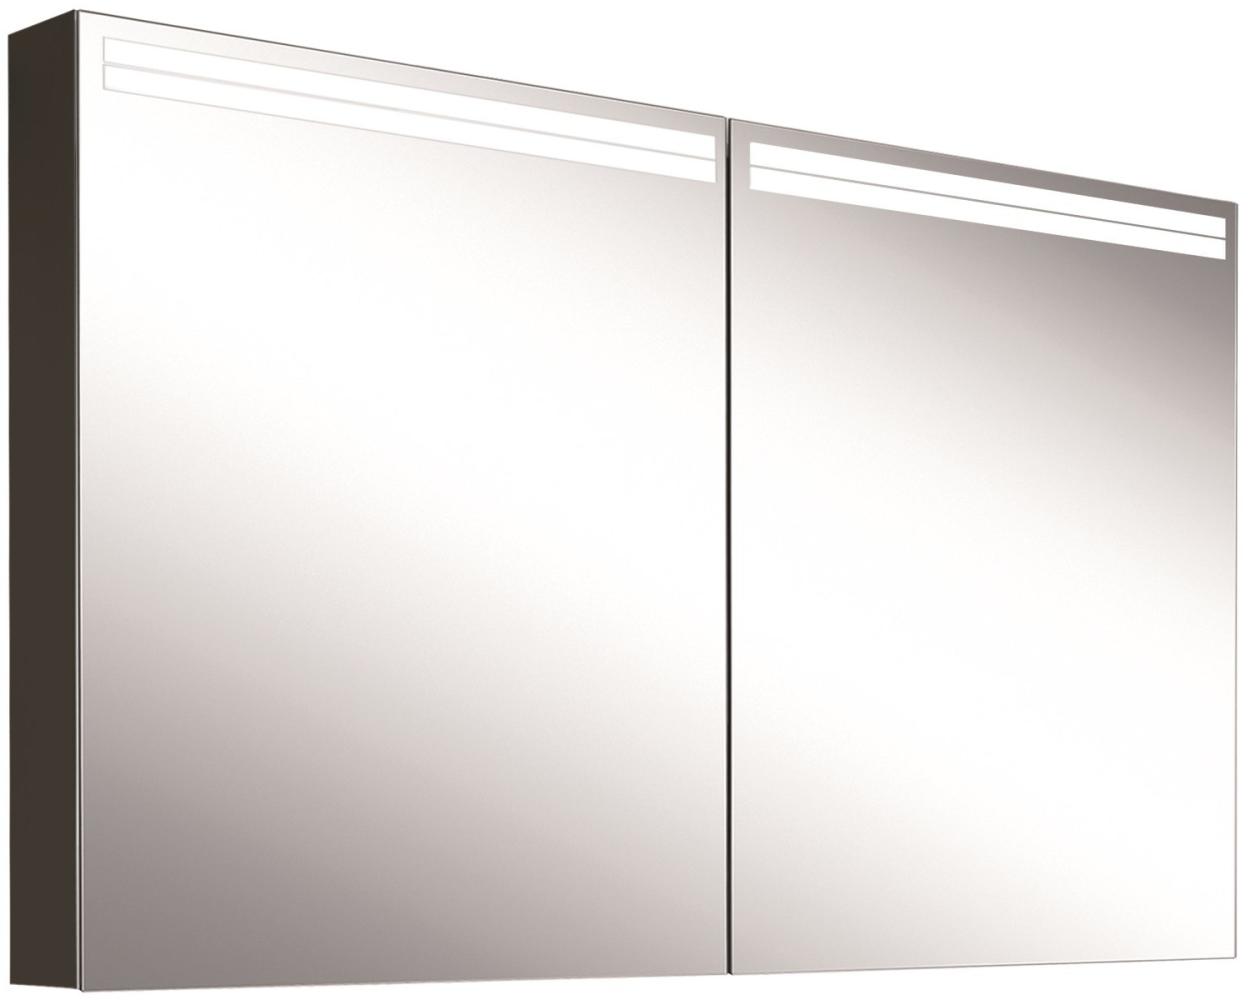 Schneider ARANGALINE LED Lichtspiegelschrank, 2 Doppelspiegeltüren, 120x70x12cm, 160. 520. 02. 41, Ausführung: EU-Norm/Korpus schwarz matt - 160. 520. 02. 41 Bild 1